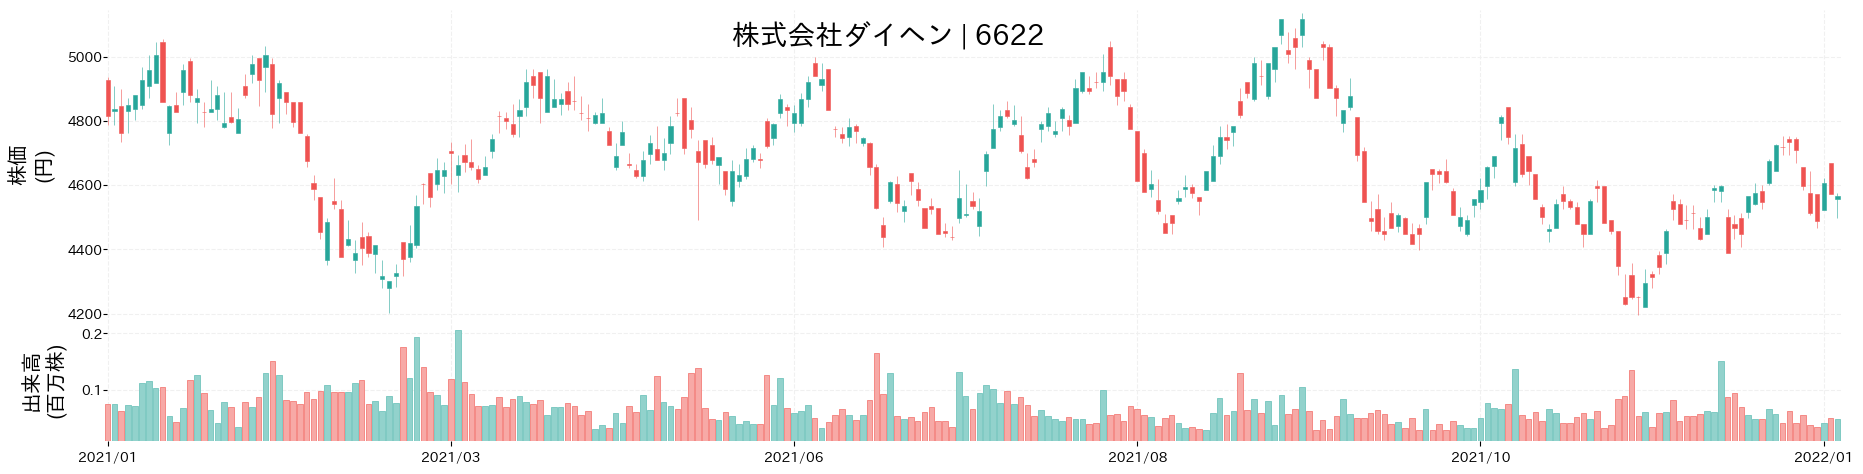 ダイヘンの株価推移(2021)